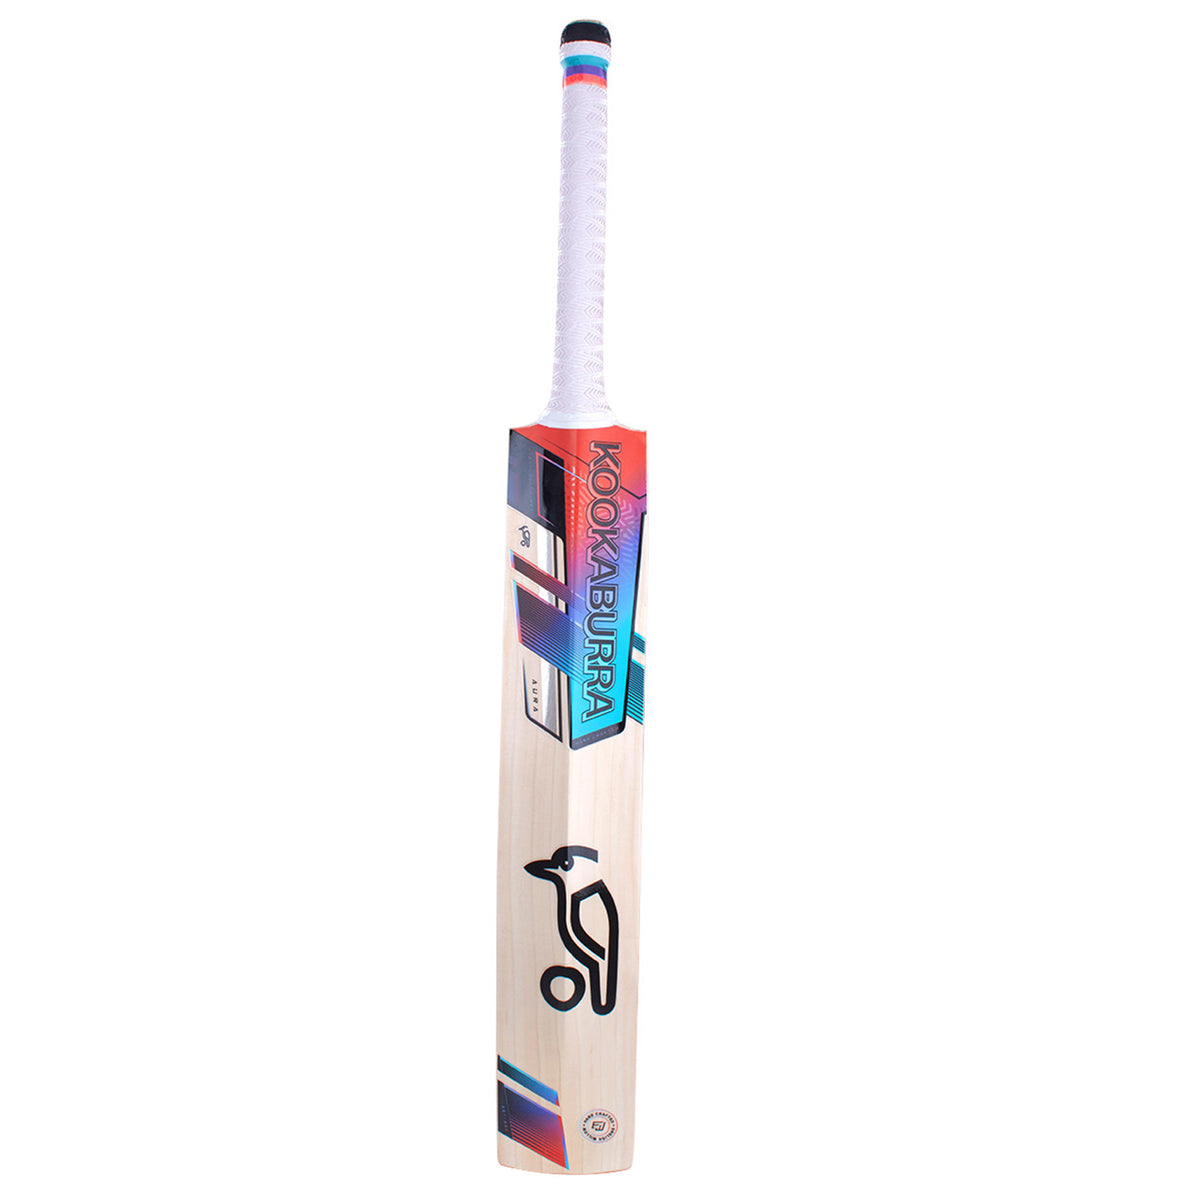 Kookaburra Aura 4.1 Senior Cricket Bat